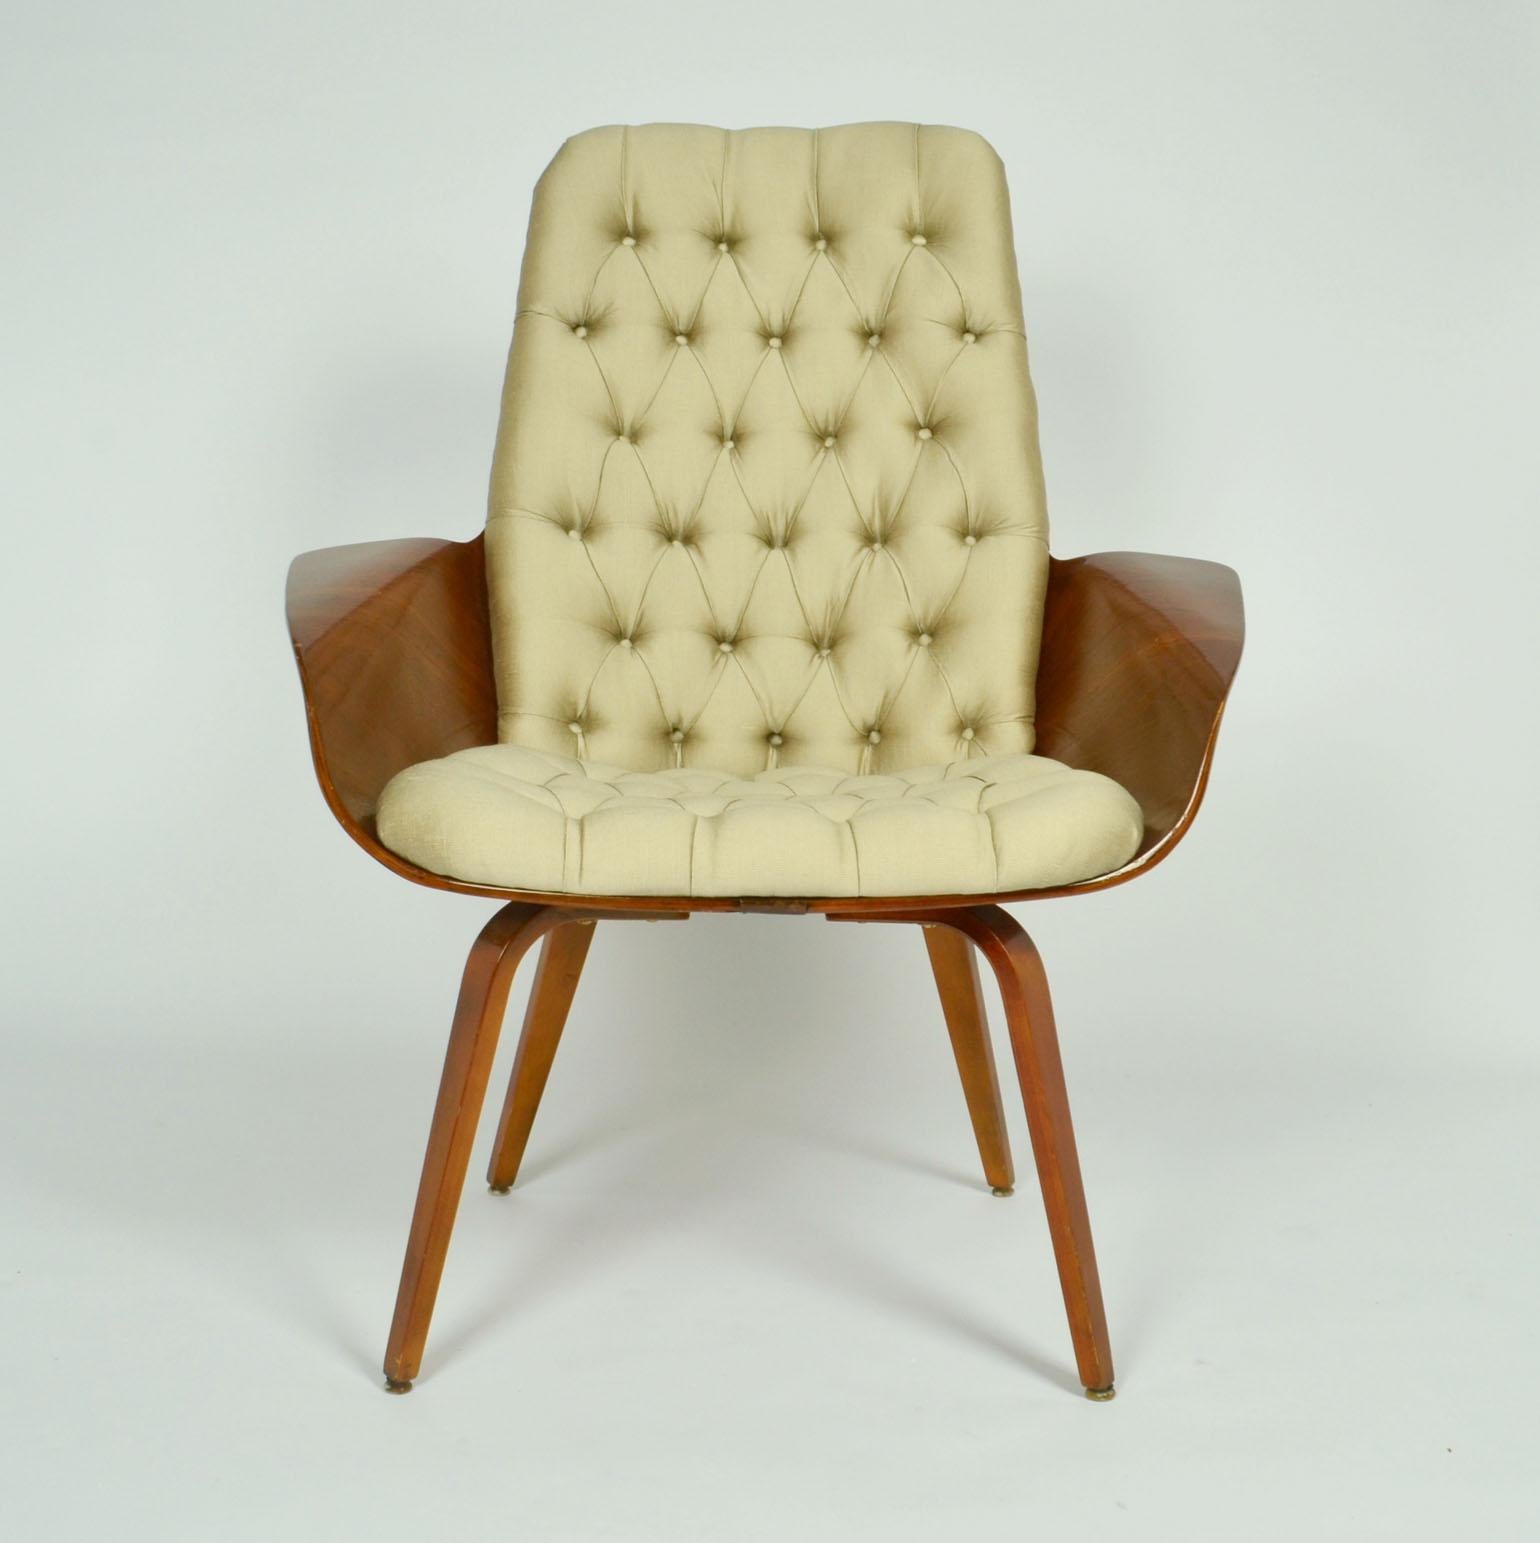 Una coppia di sedie da salotto in compensato di noce americano degli anni '60 del designer americano George Mulhauser. Questa versione più grande si presenta con le gambe in legno, più rare. La versione più piccola e famosa, 